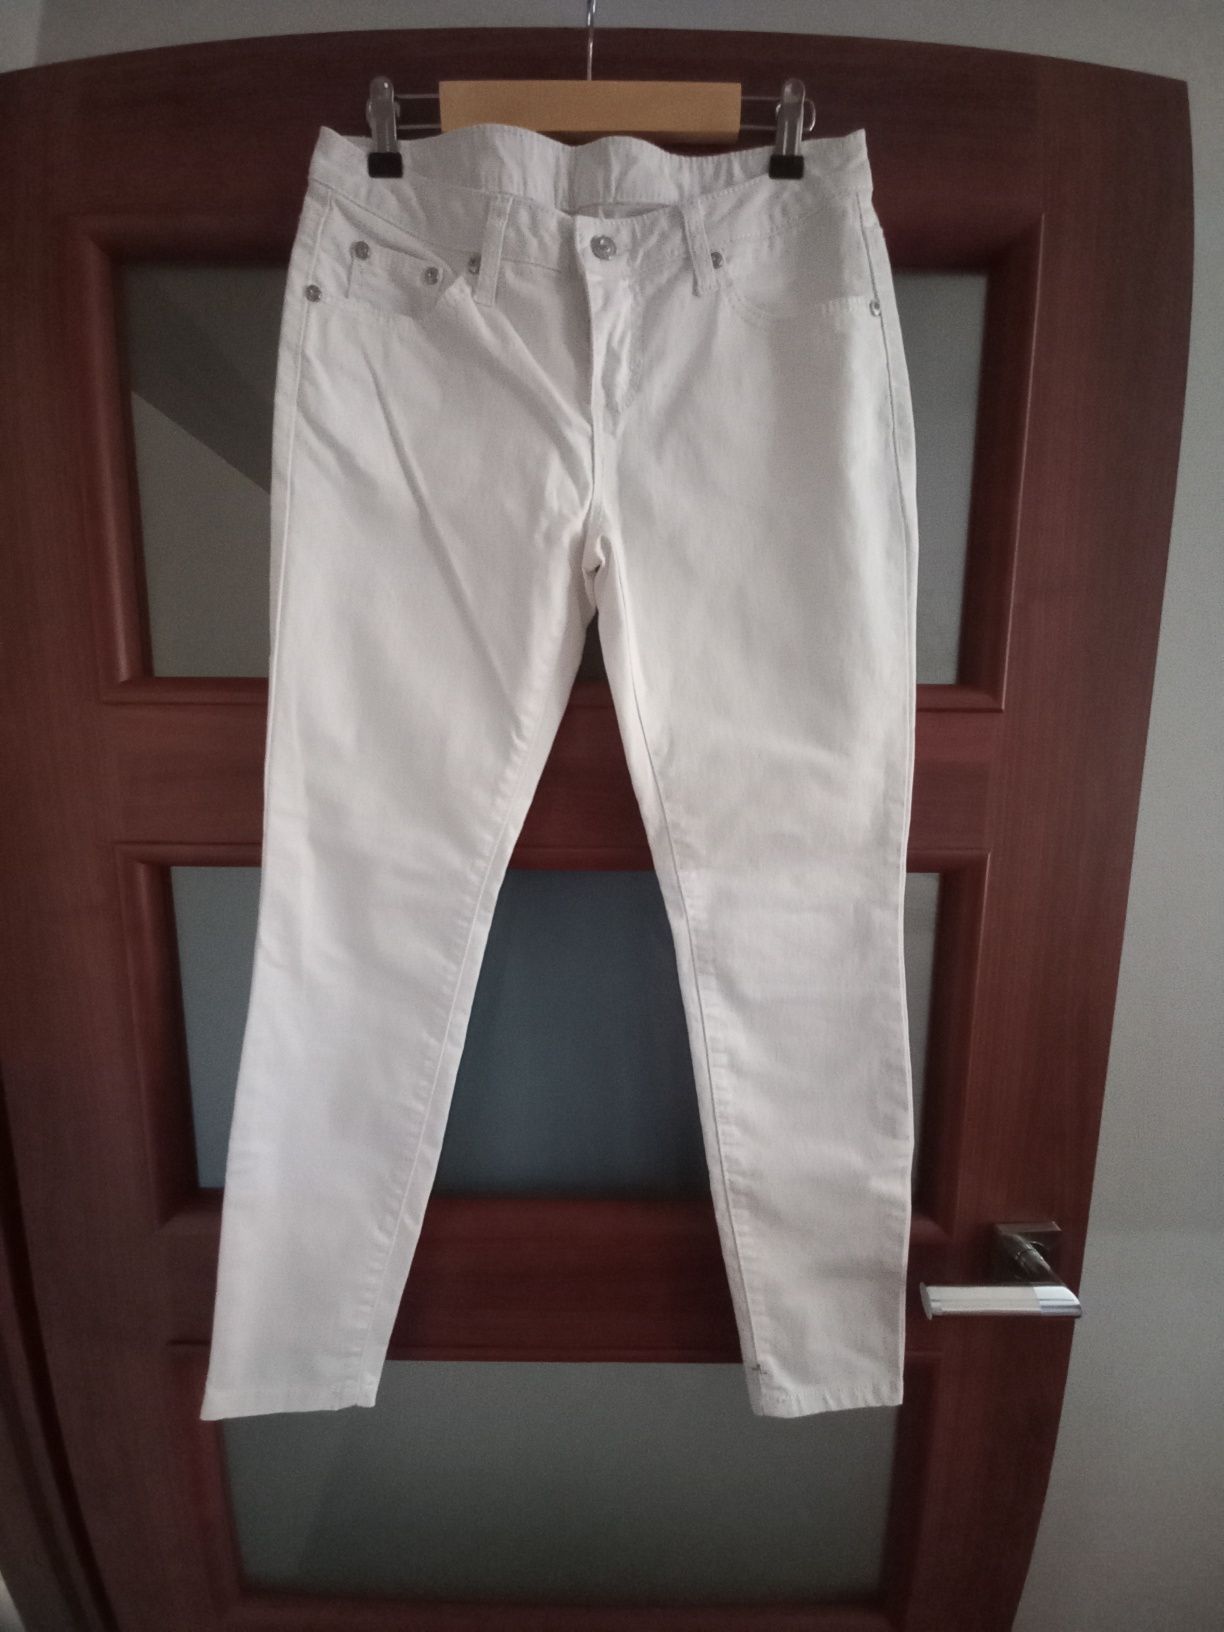 Spodnie jeansy białe  z bonprix. Rozm 36.